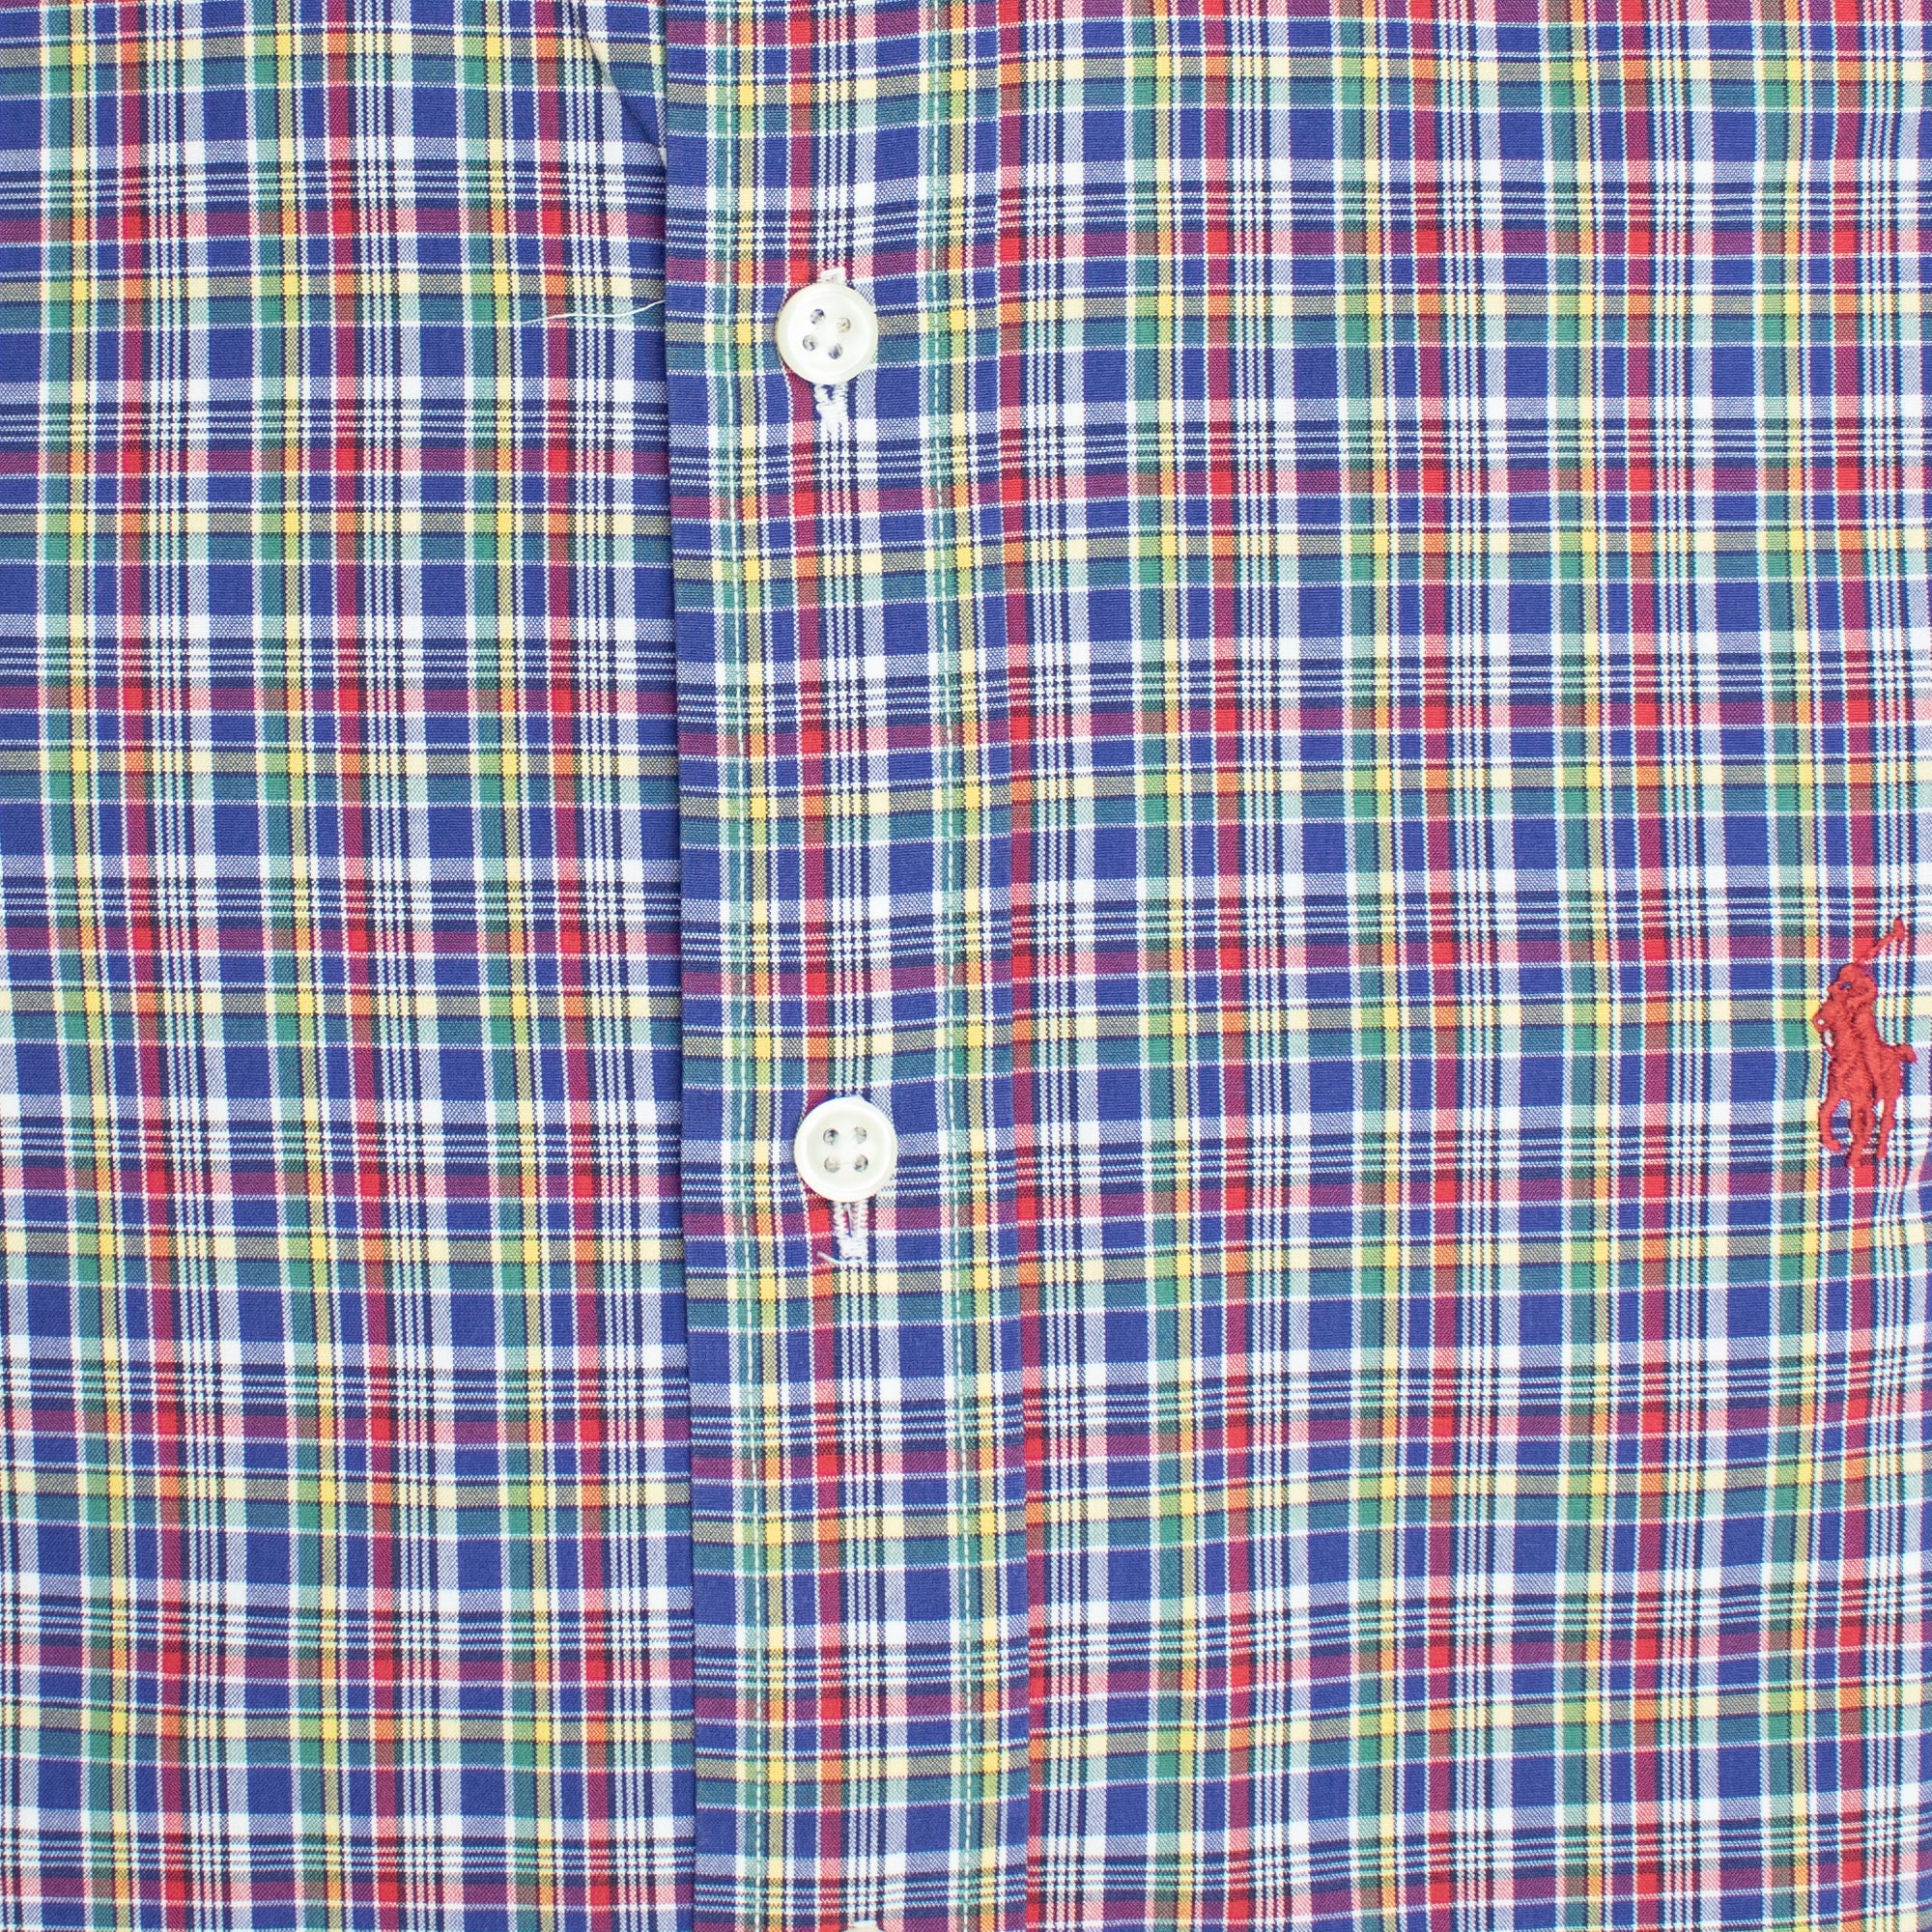 Vintage 100% Cotton Green Plaid Blaire Large Long Sleeve Shirt — Ralph  Lauren